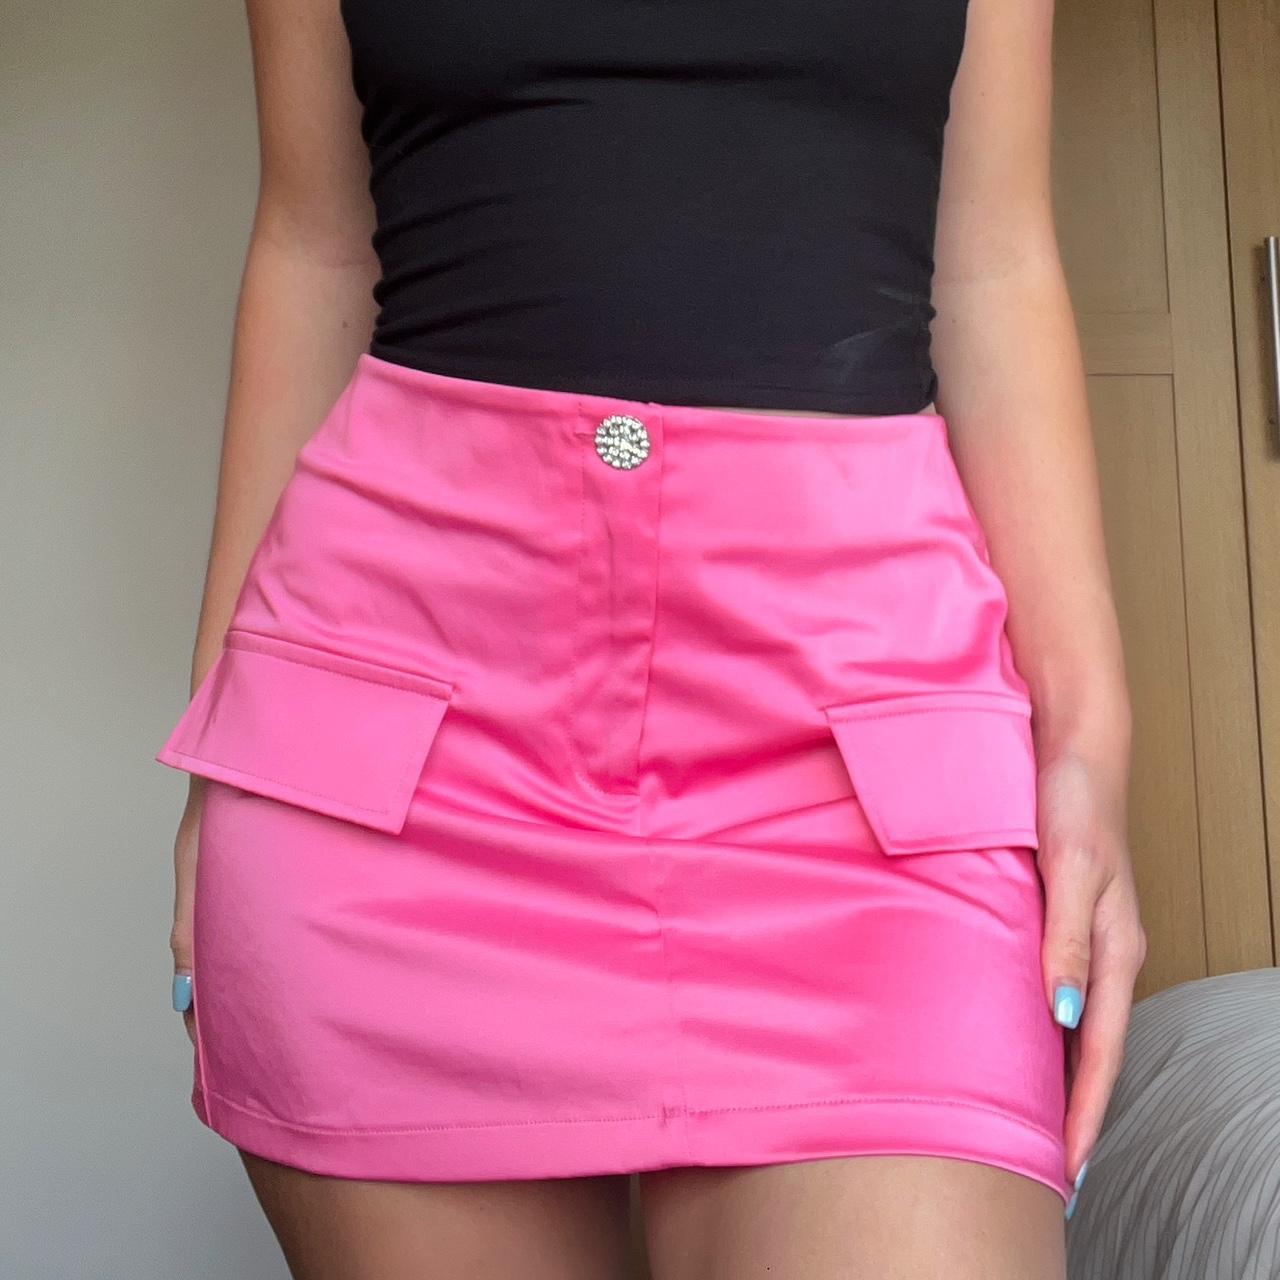 Zara Women's Pink and Silver Skirt | Depop